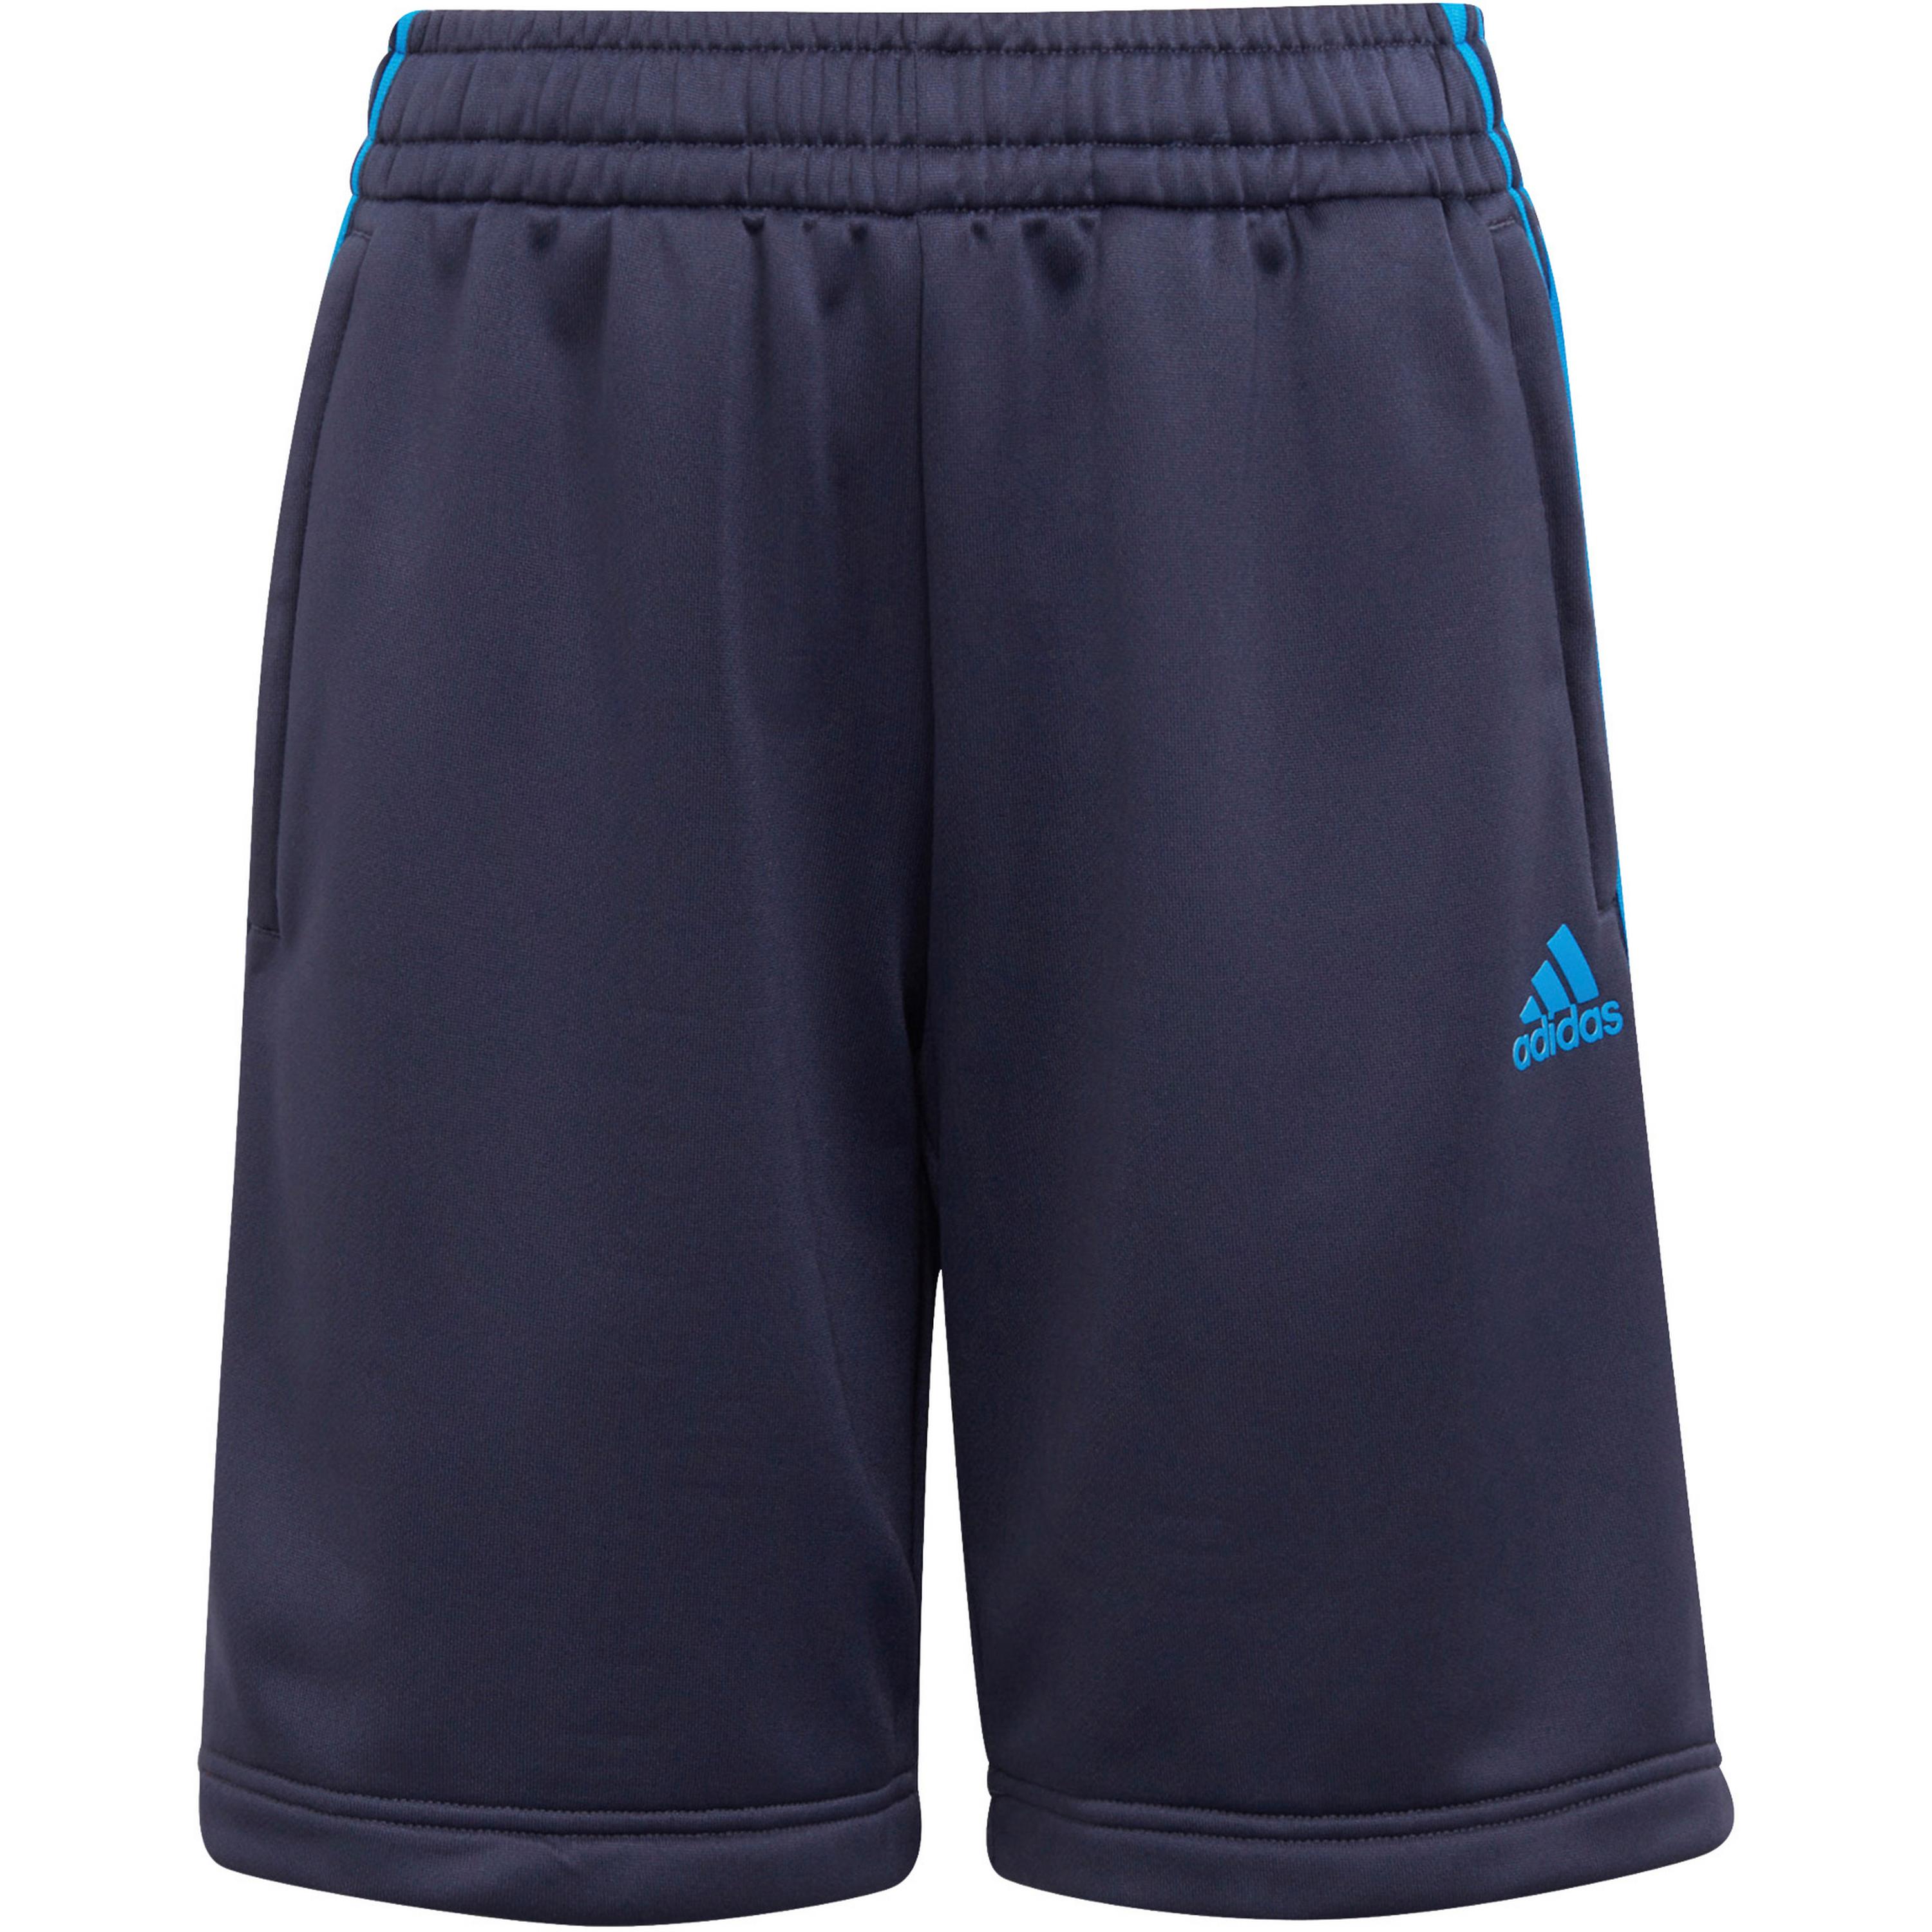 Dzieci (92-140 cm) RCOX6 ADIDAS PERFORMANCE Spodnie sportowe w kolorze Ciemny Niebieski, Niebieskim 